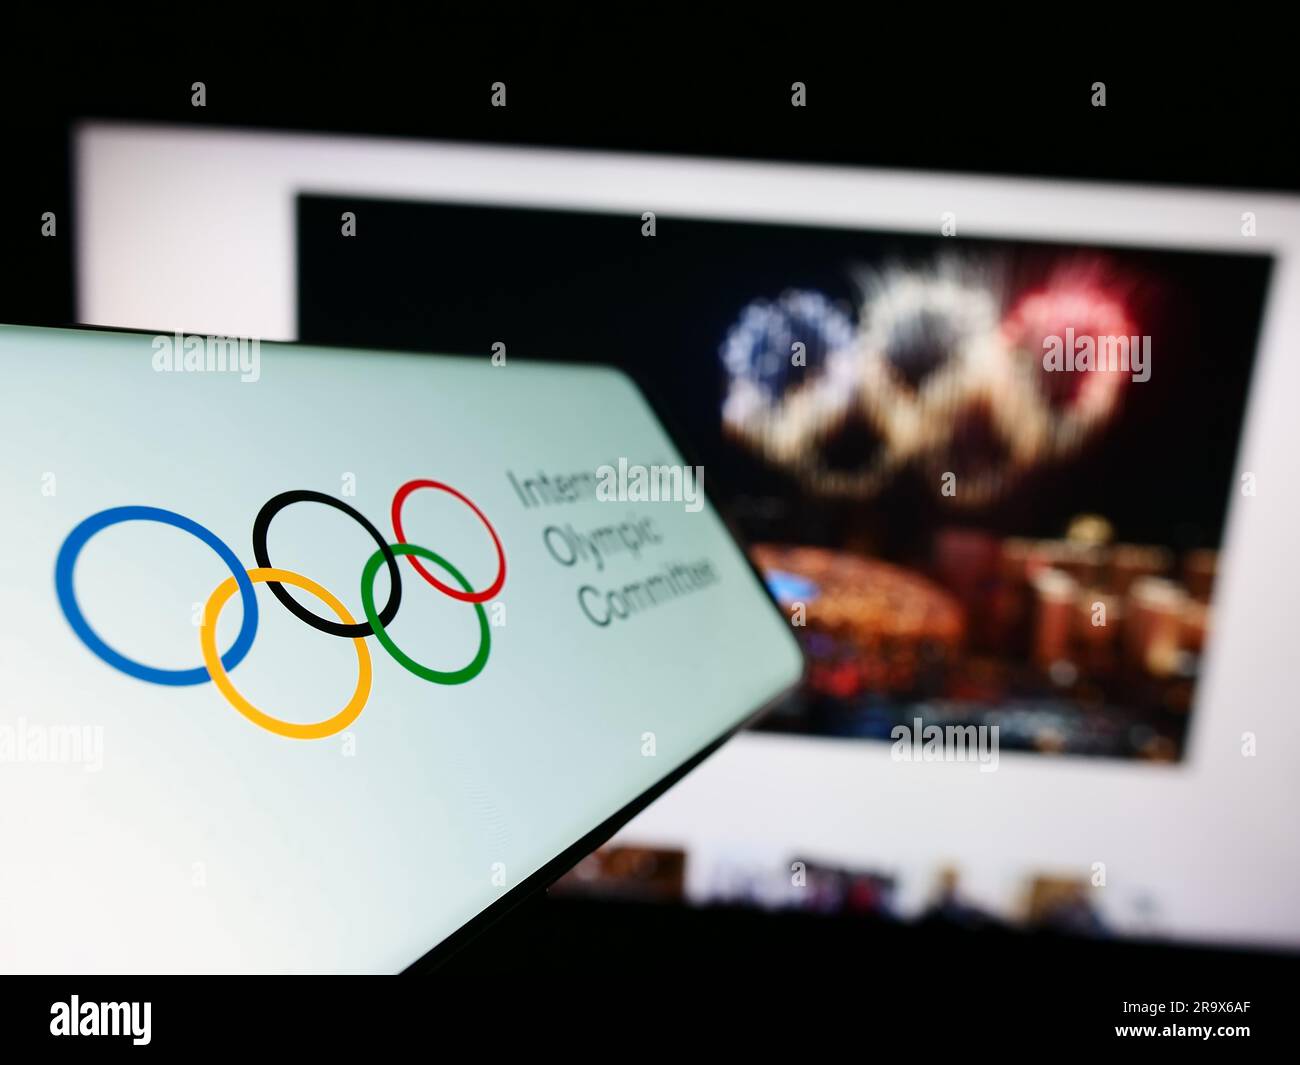 Telefono cellulare con logo del Comitato Olimpico Internazionale (CIO) sullo schermo davanti al sito web. Mettere a fuoco il display centrale sinistro del telefono. Foto Stock